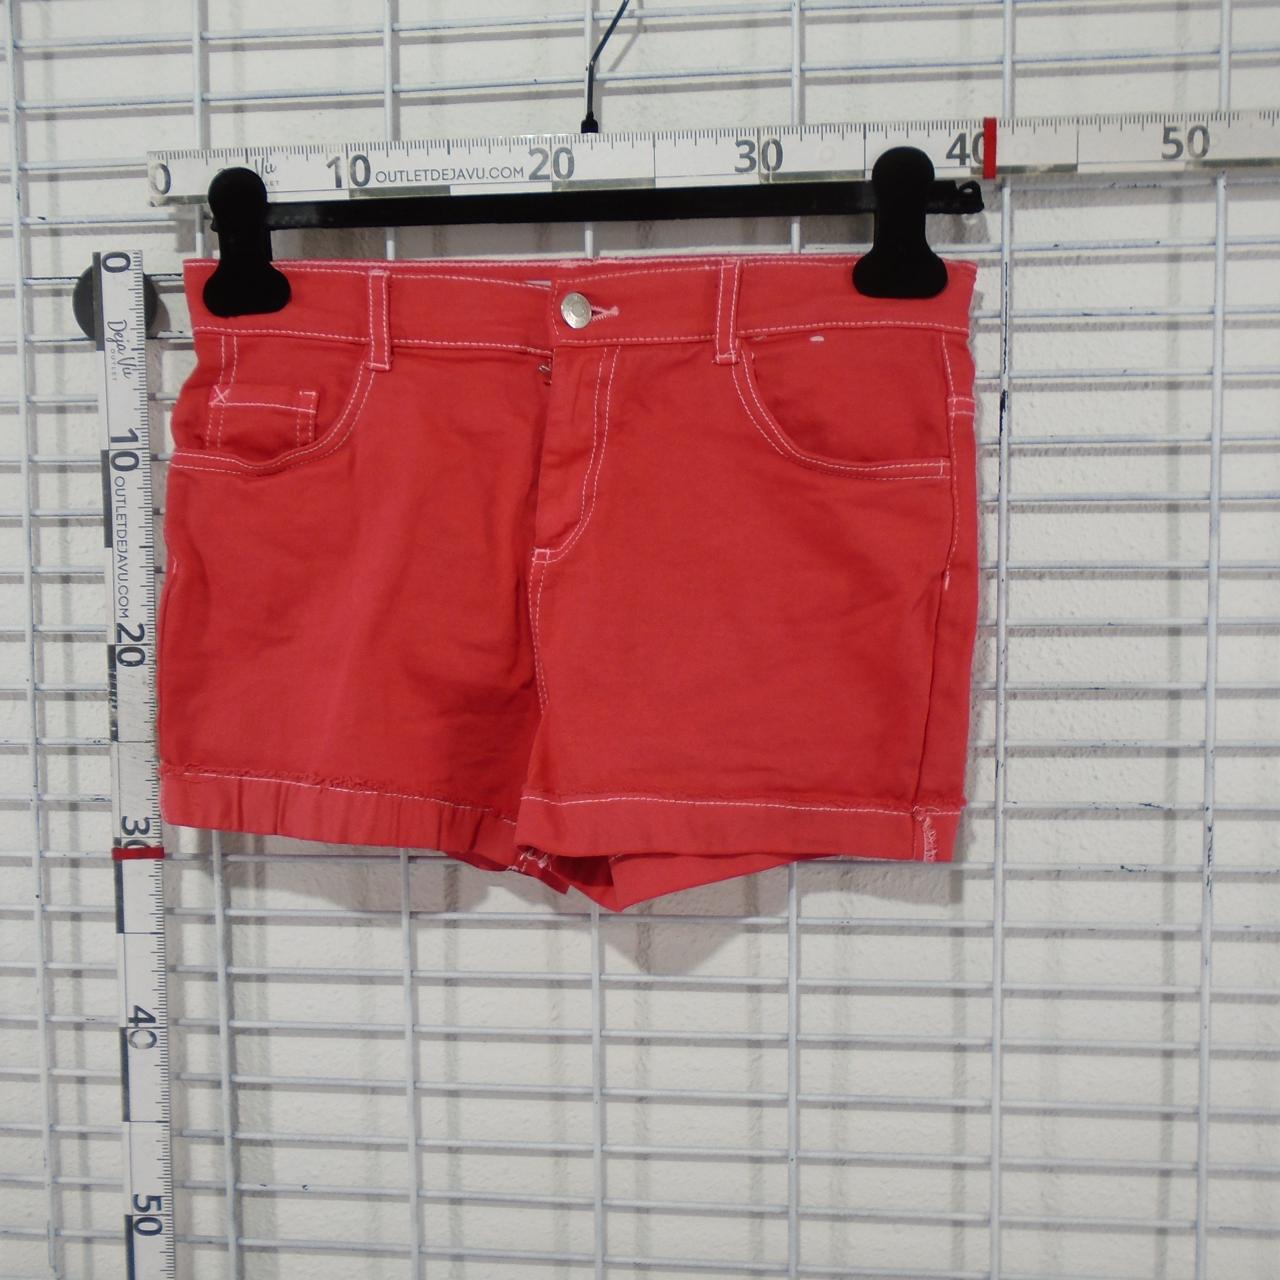 Pantalones cortos de mujer de mezclilla.  Rojo.  S. Usado.  Bien